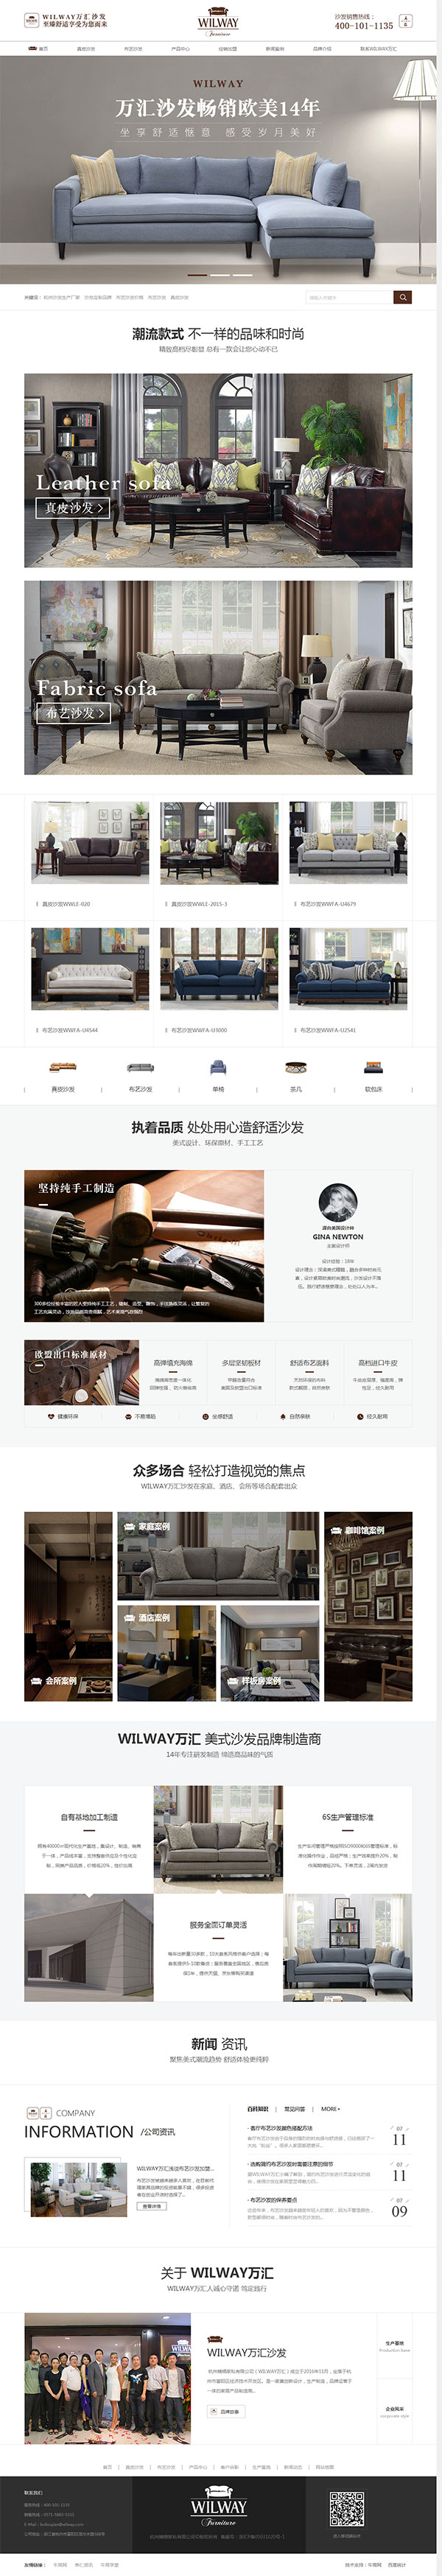 万汇沙发-营销型网站页面